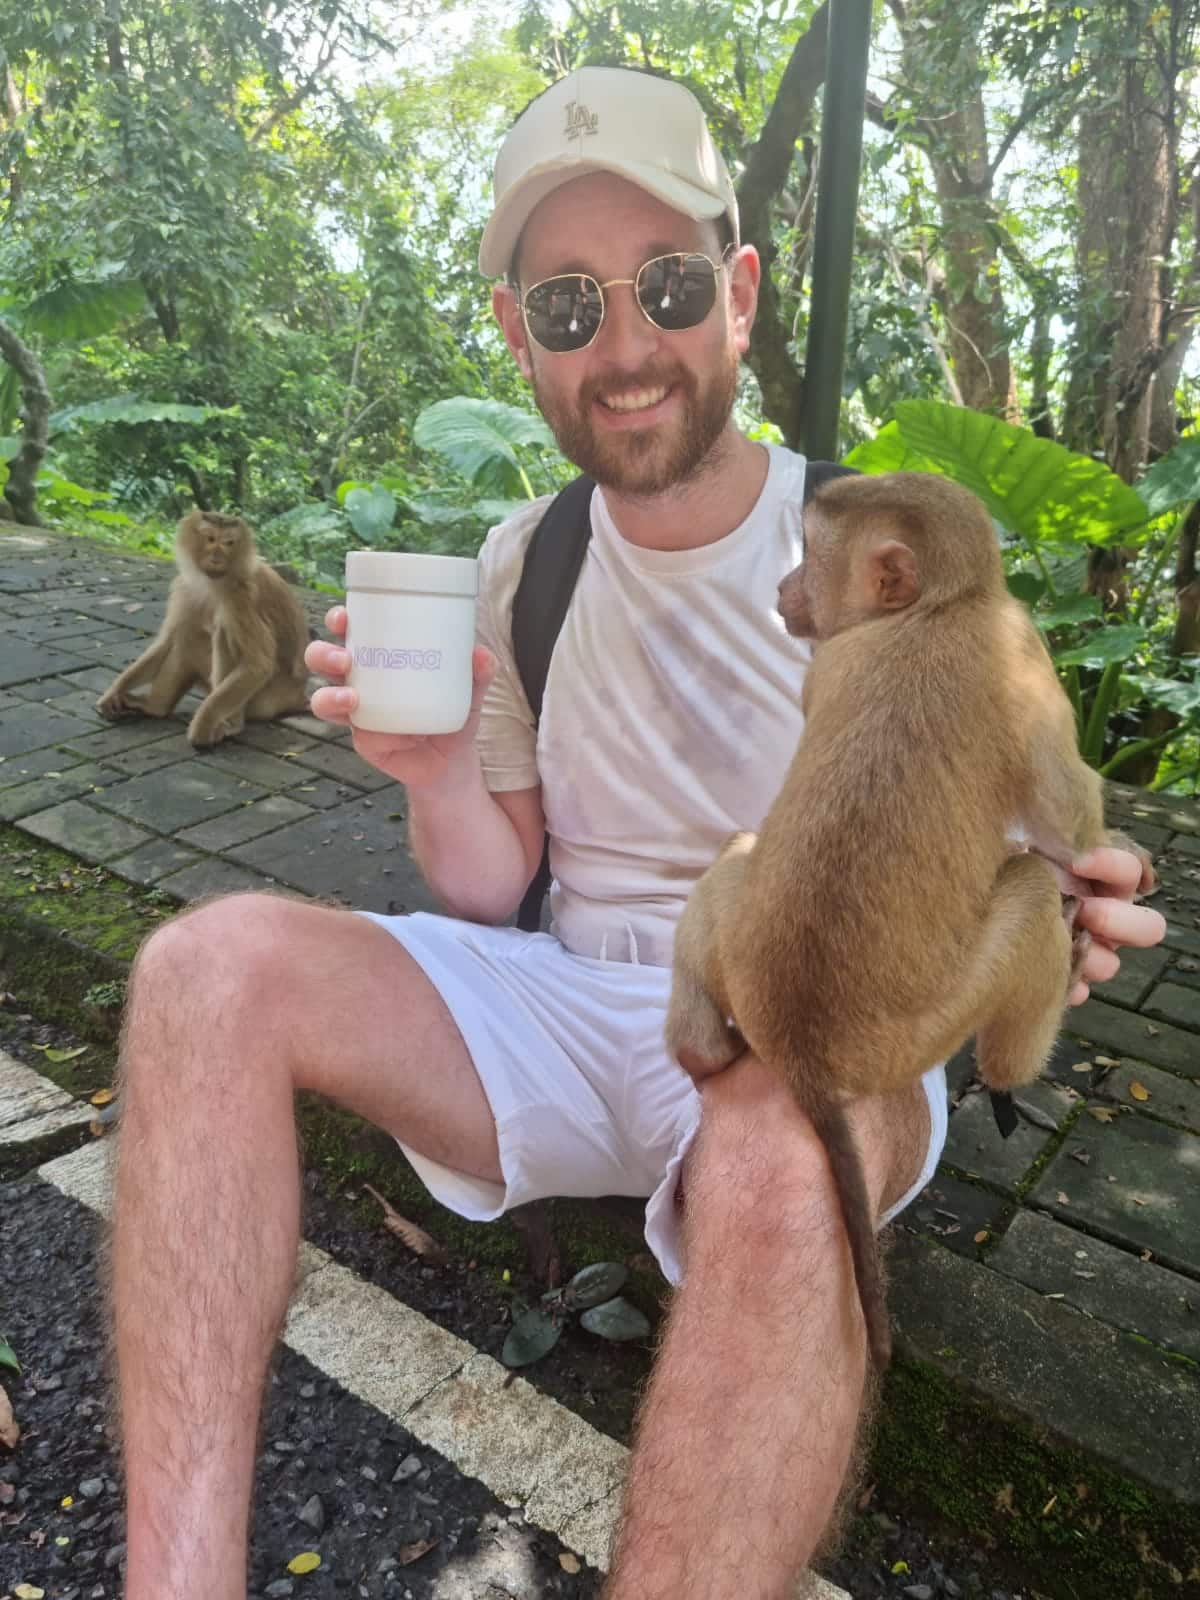 En smilende mand i en hvid baseballkasket sidder i et tropisk miljø, holder en kop til drikkevarer i højre hånd og rører ved en brun abe, der balancerer på hans venstre knæ med venstre hånd.